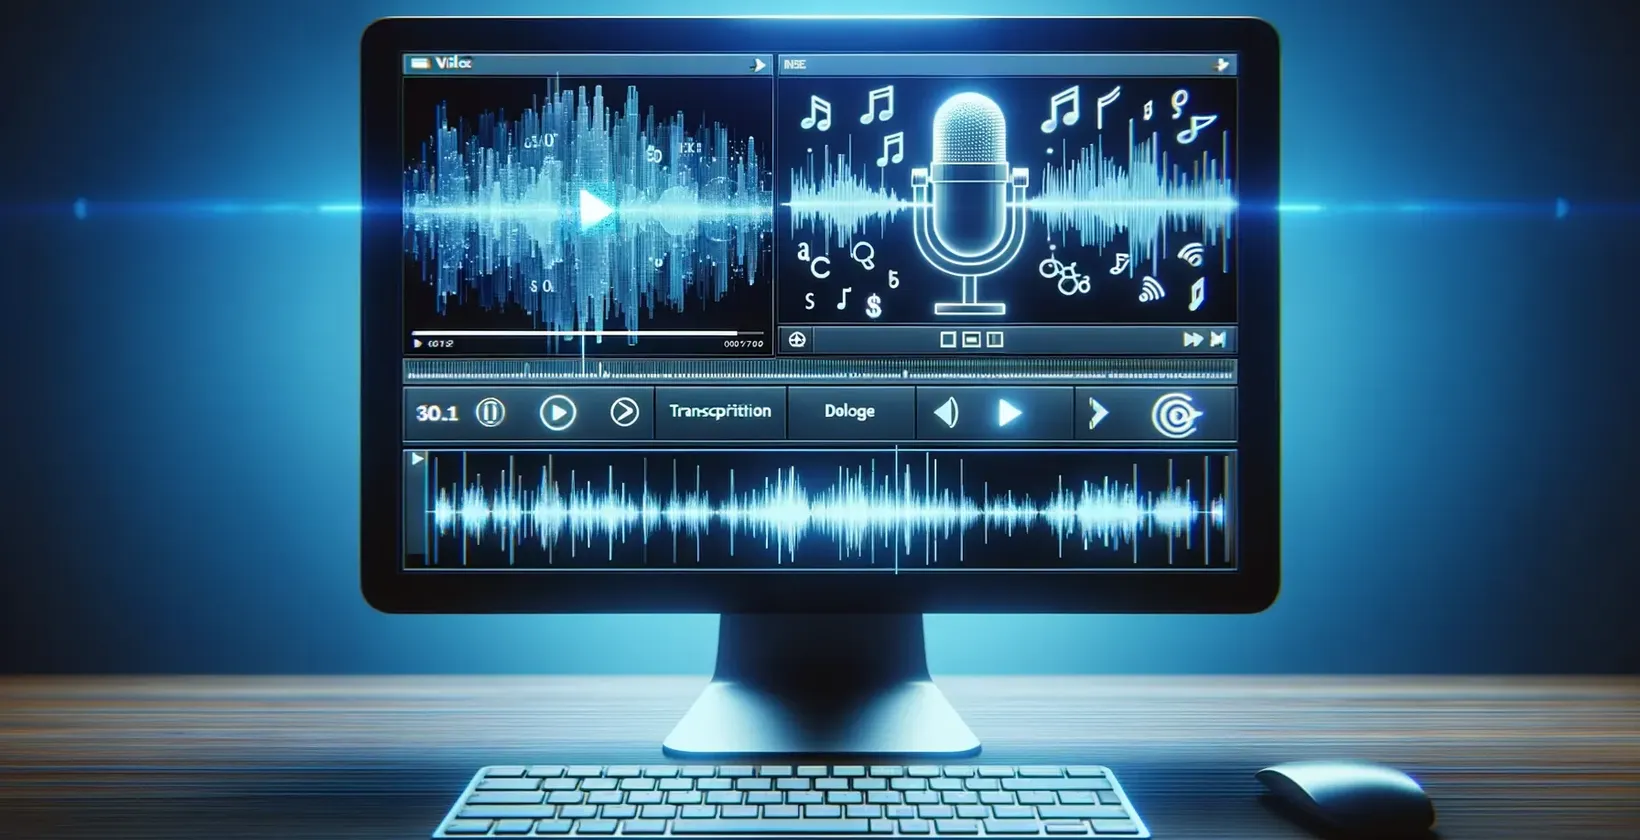 Uno schermo di computer che visualizza le note musicali e un microfono, utilizzato per la trascrizione da video a testo.